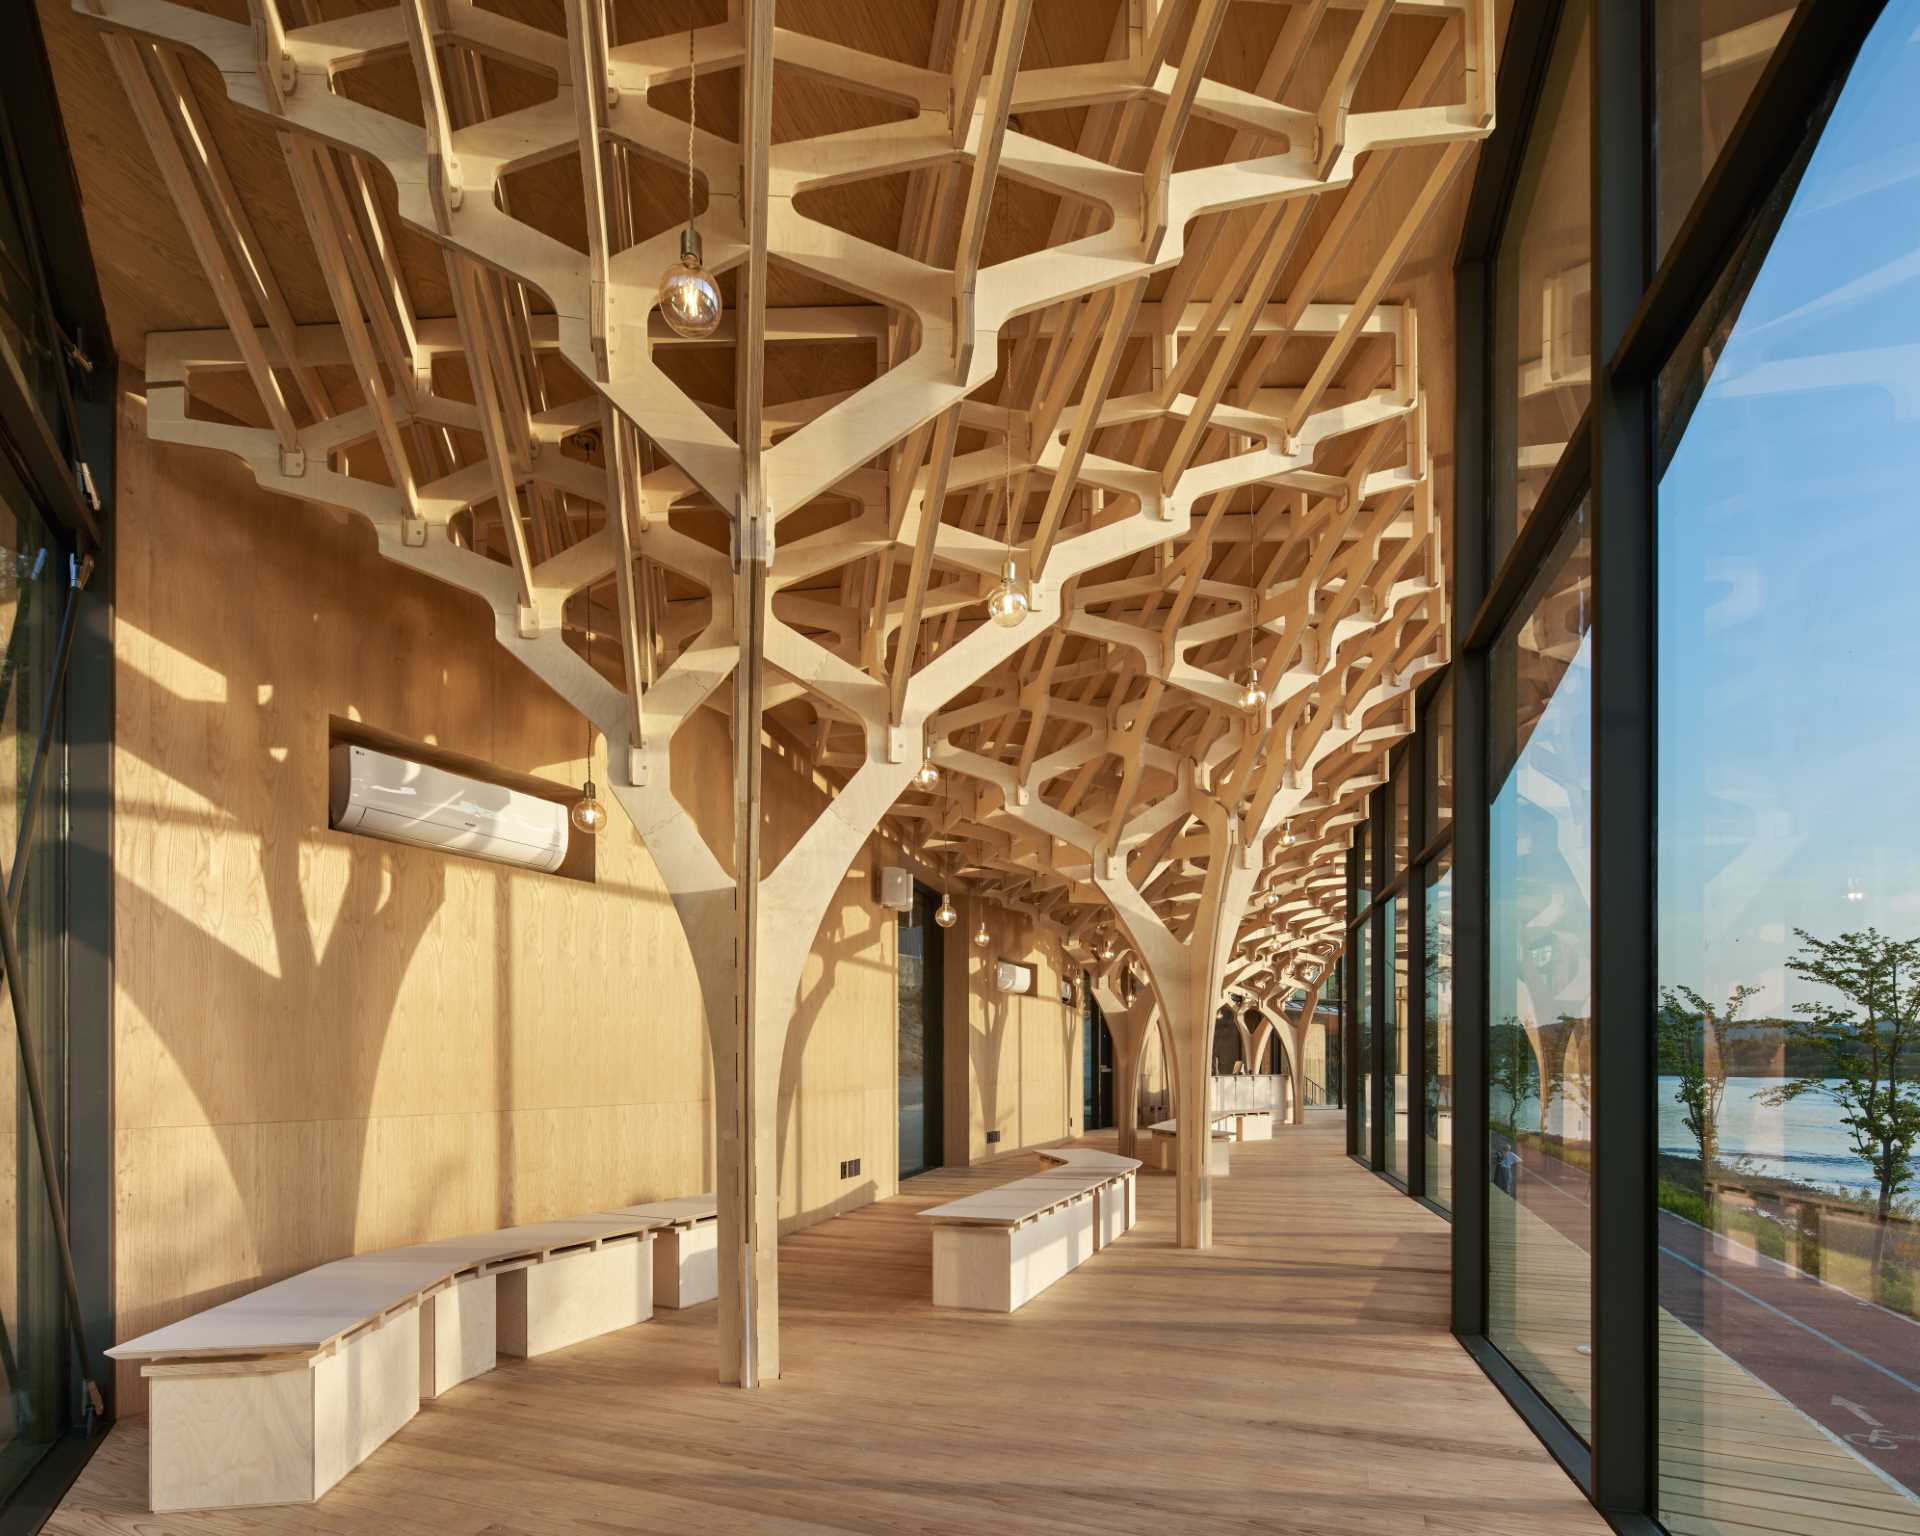 شش ستون درخت مانند، صنایع دستی چوب را در داخل آلاچیق کنار رودخانه با جلو شیشه ای و سقف منحنی به نمایش می گذارد.